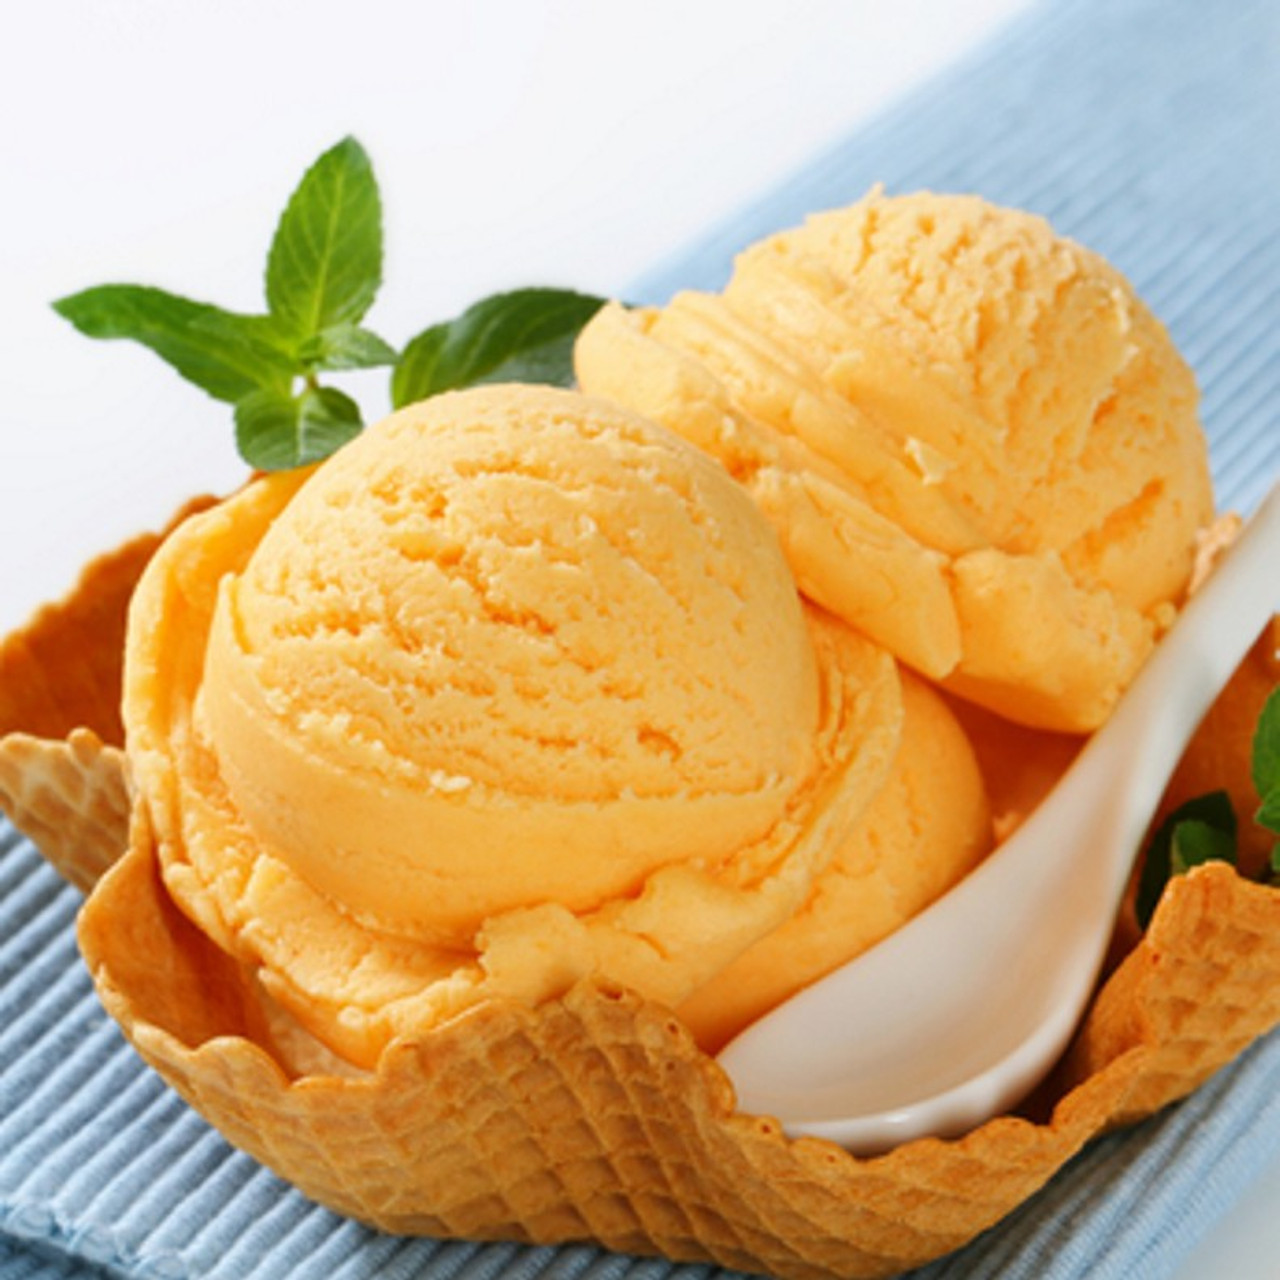 orange ice cream scoop